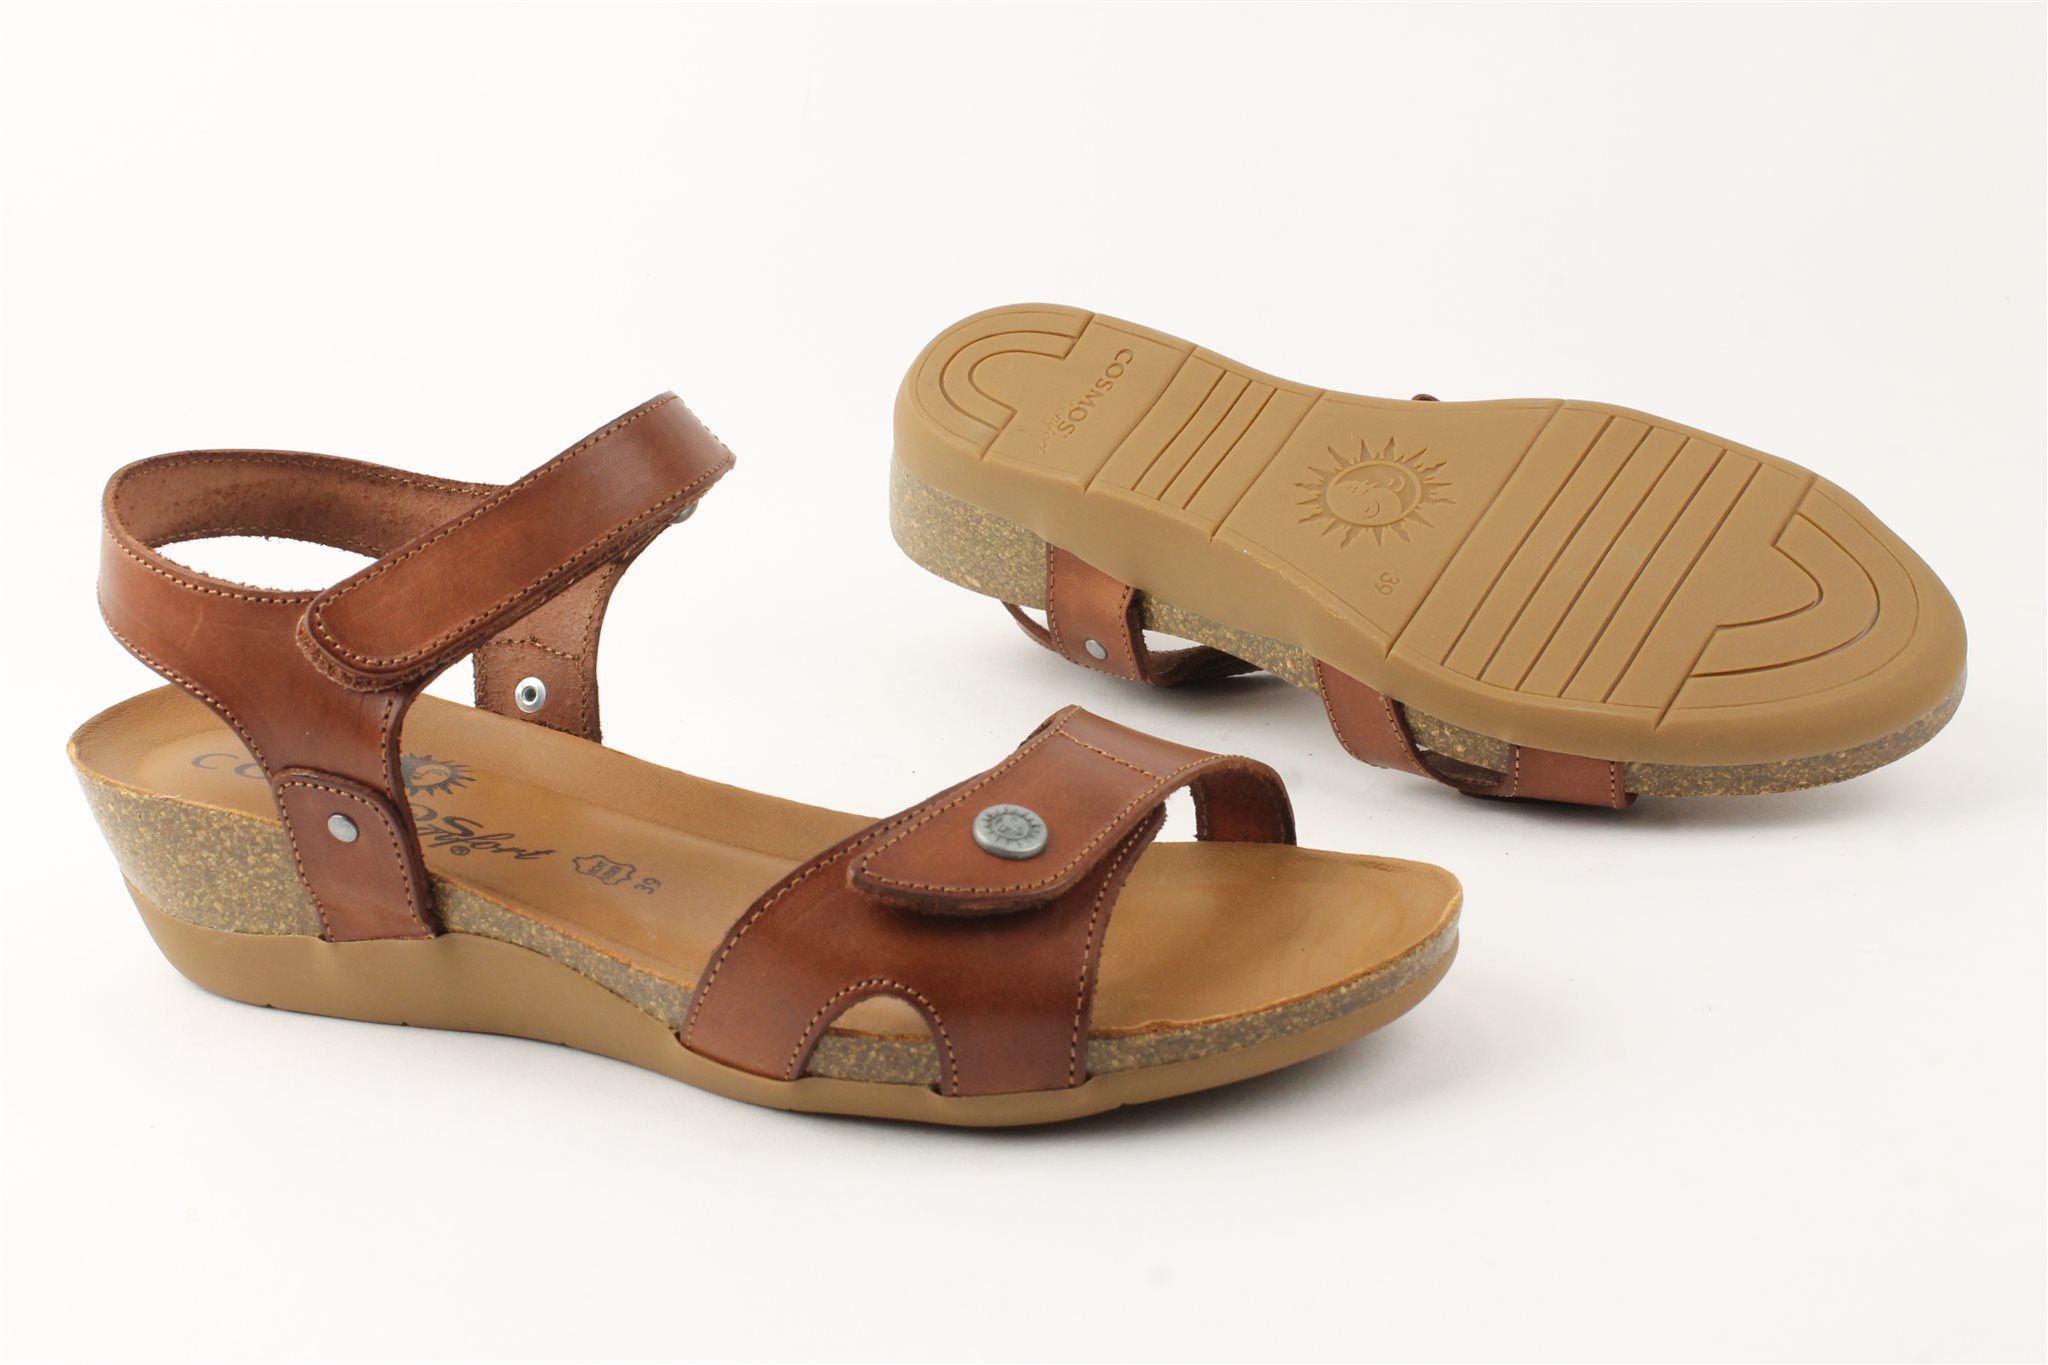 Leggen selecteer Republikeinse partij Cosmos Comfort klittenband sandaal bij Happy Walker - Beoordeeld met 9,7